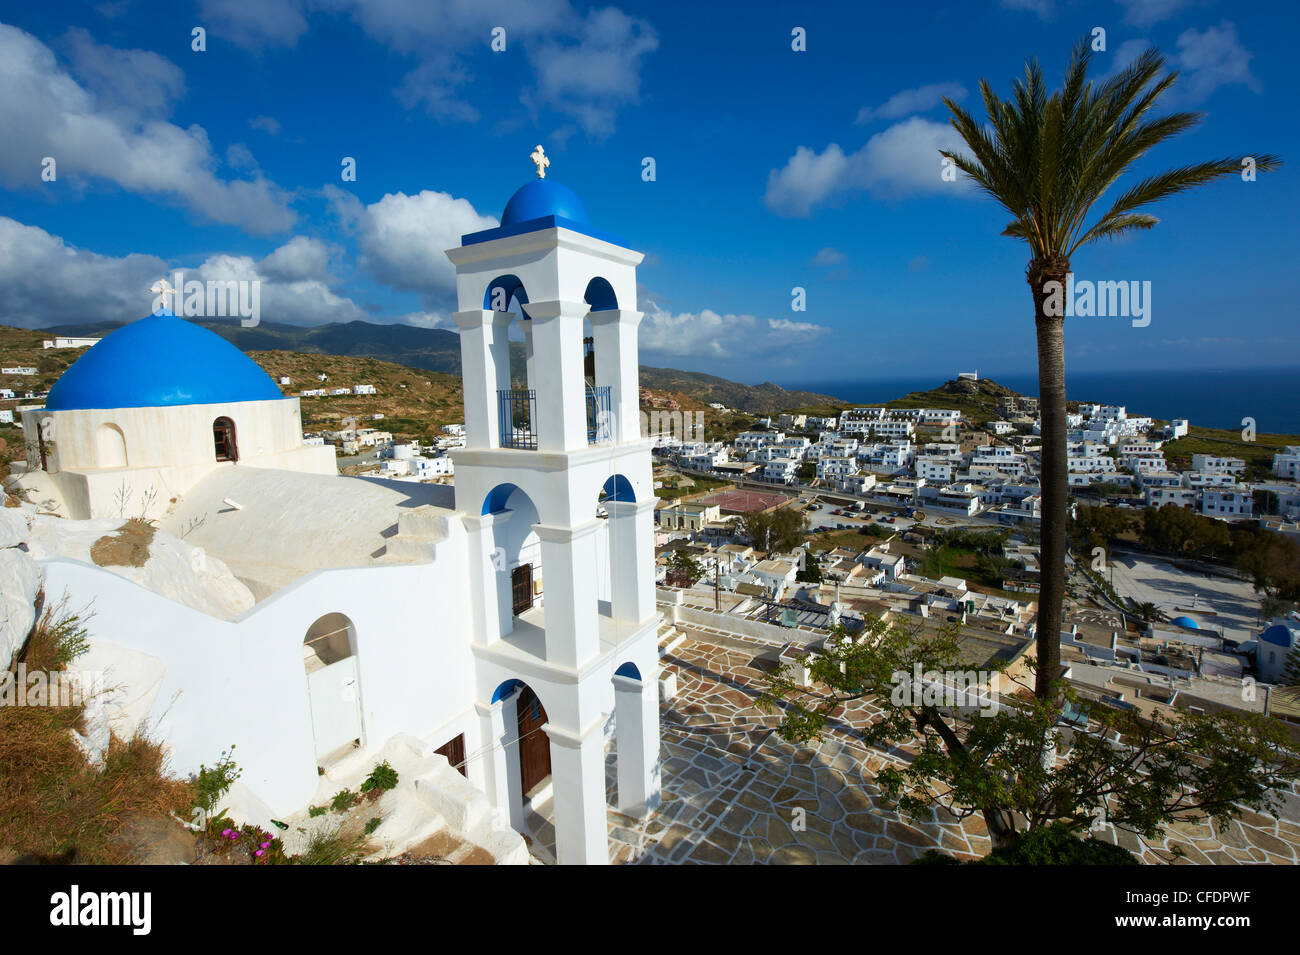 Palm-Baum und Kirche, Insel Ios, Cyclades, griechische Inseln, Griechenland, Europa Stockfoto